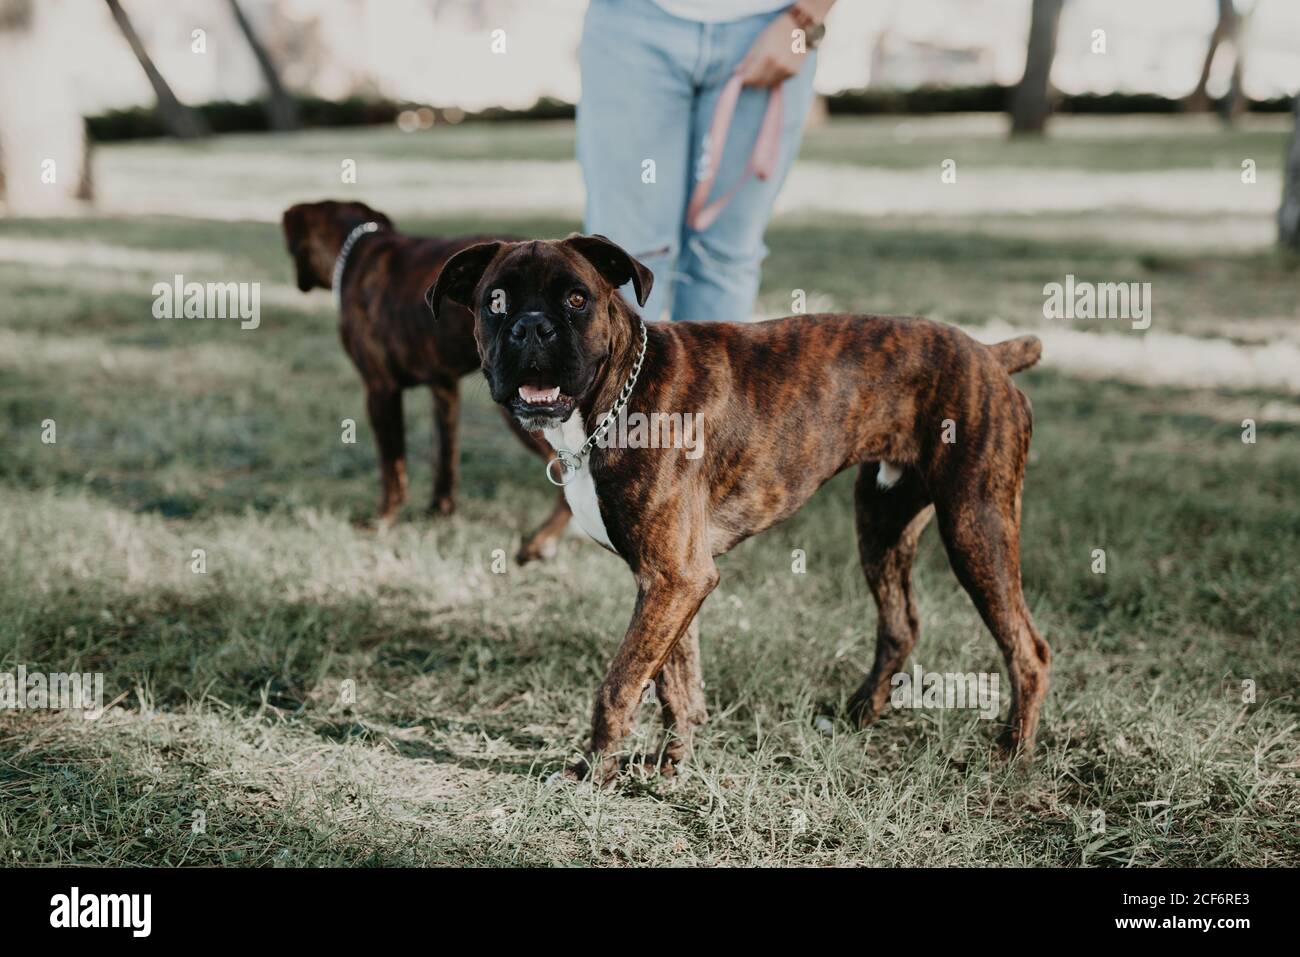 Liebenswert stark braun Boxer Hund zu Fuß und spielen auf Rasen An einem hellen Tag Stockfoto